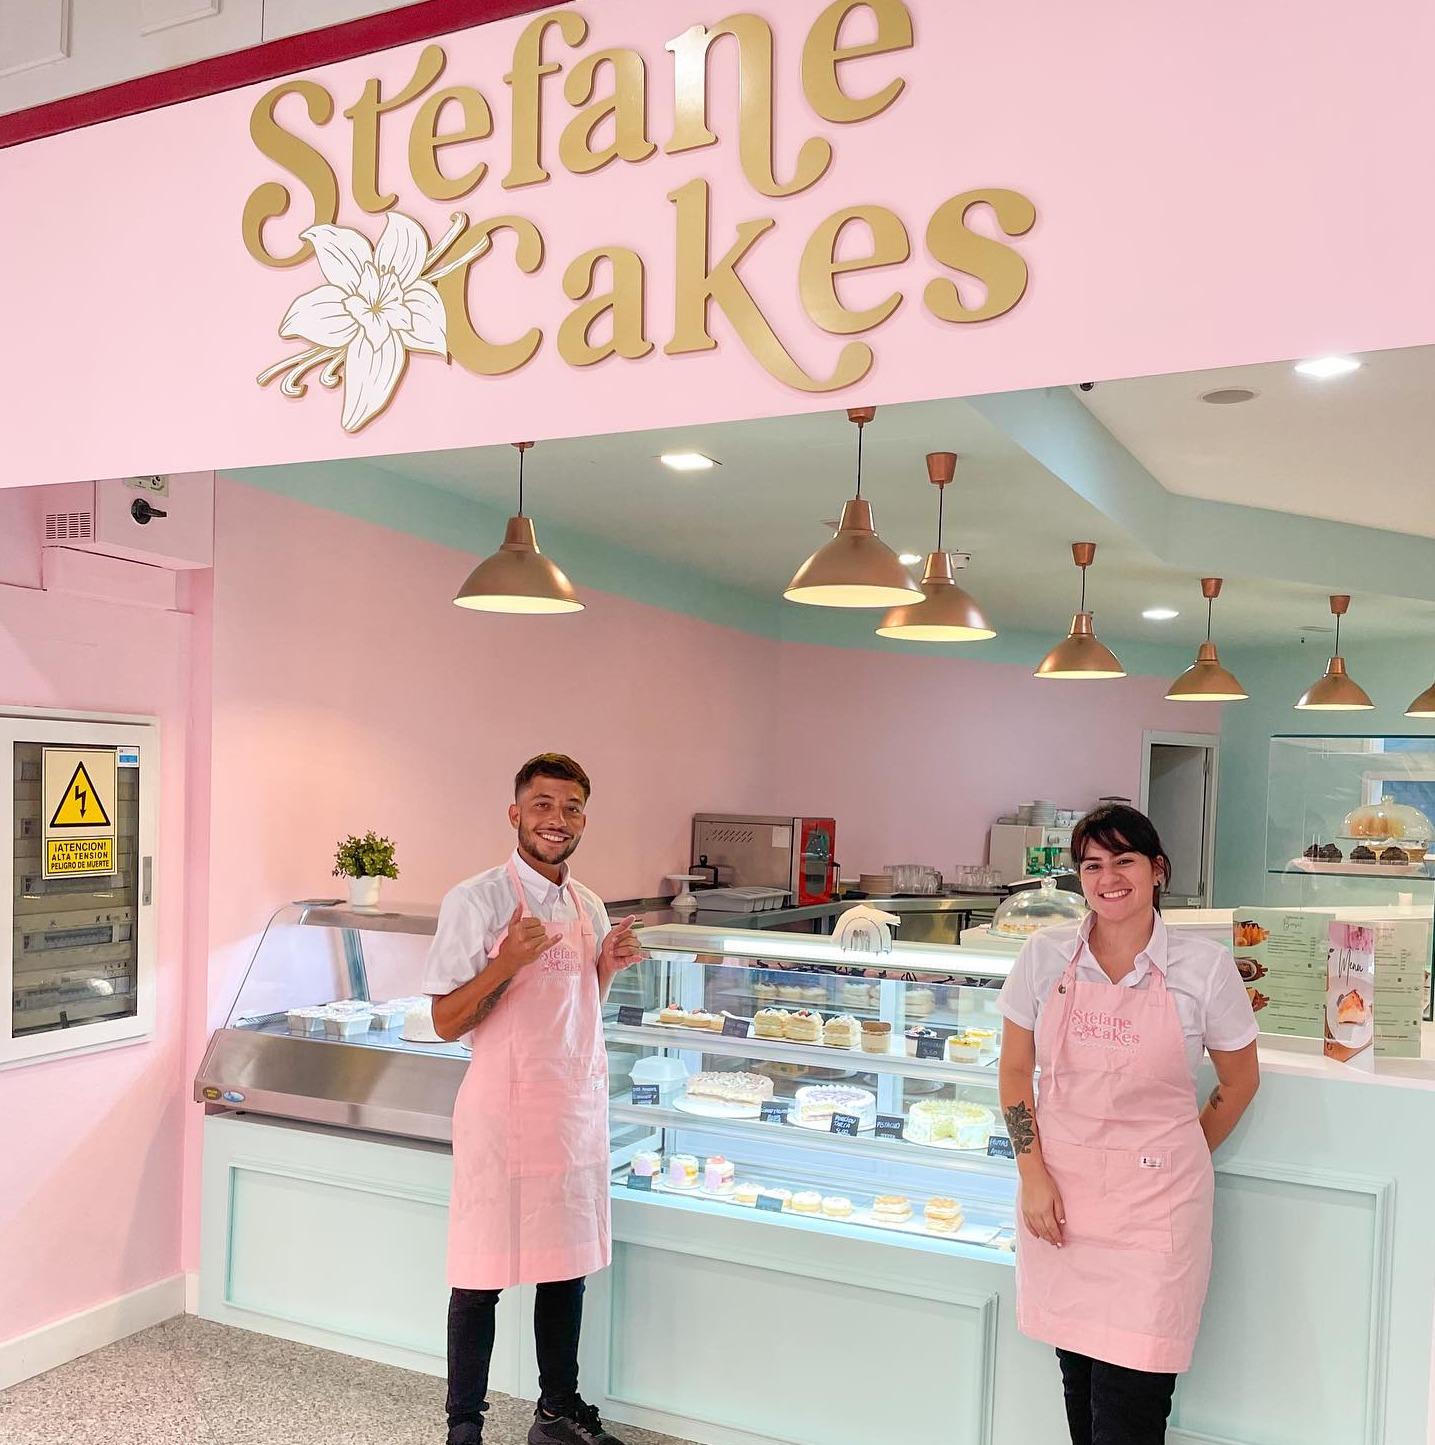 Stefane Cakes